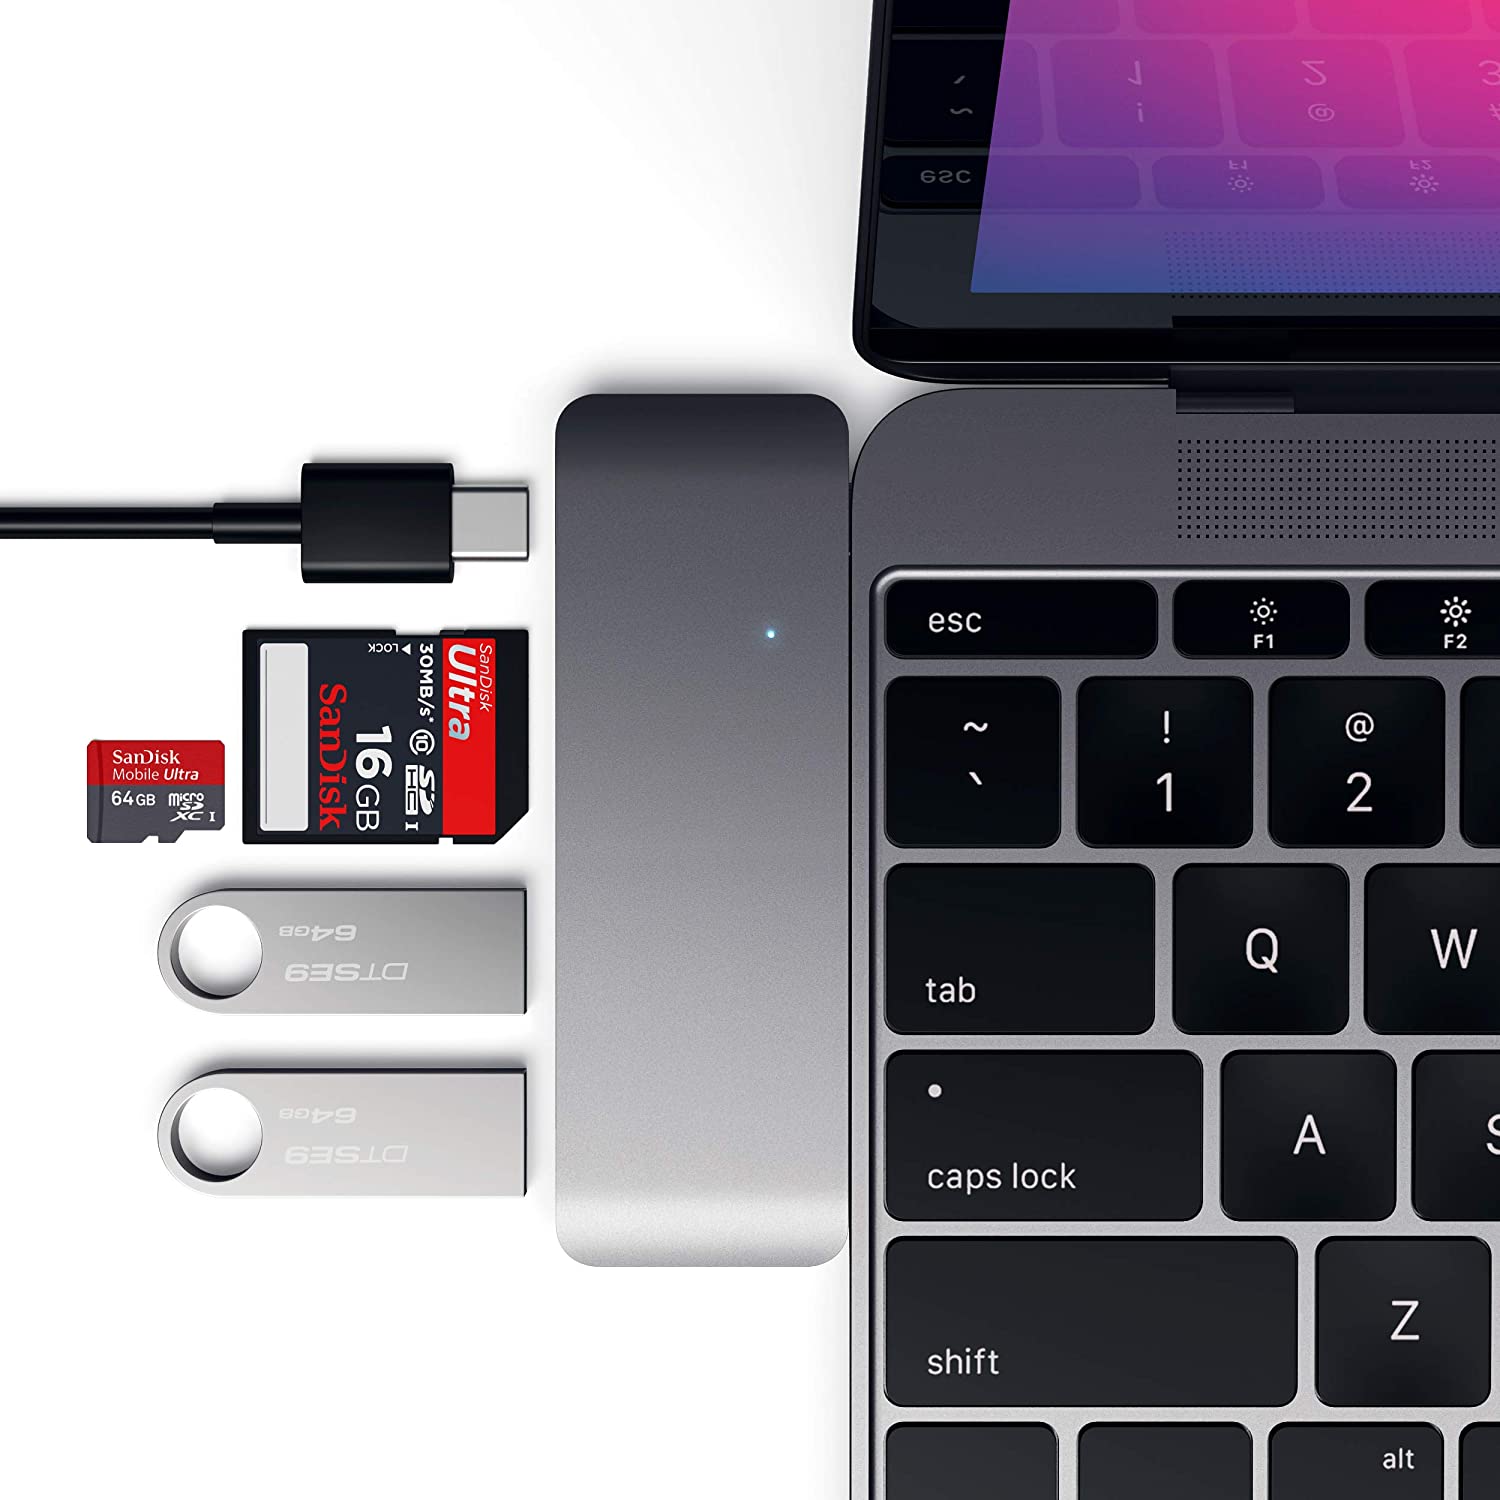 【日本代購】Satechi 护照 多功能 USB 集线器 Type-C Macbook 12英寸用 USB3.0 3in1 USB-C 充电端口 组合集线器 (太空灰色)